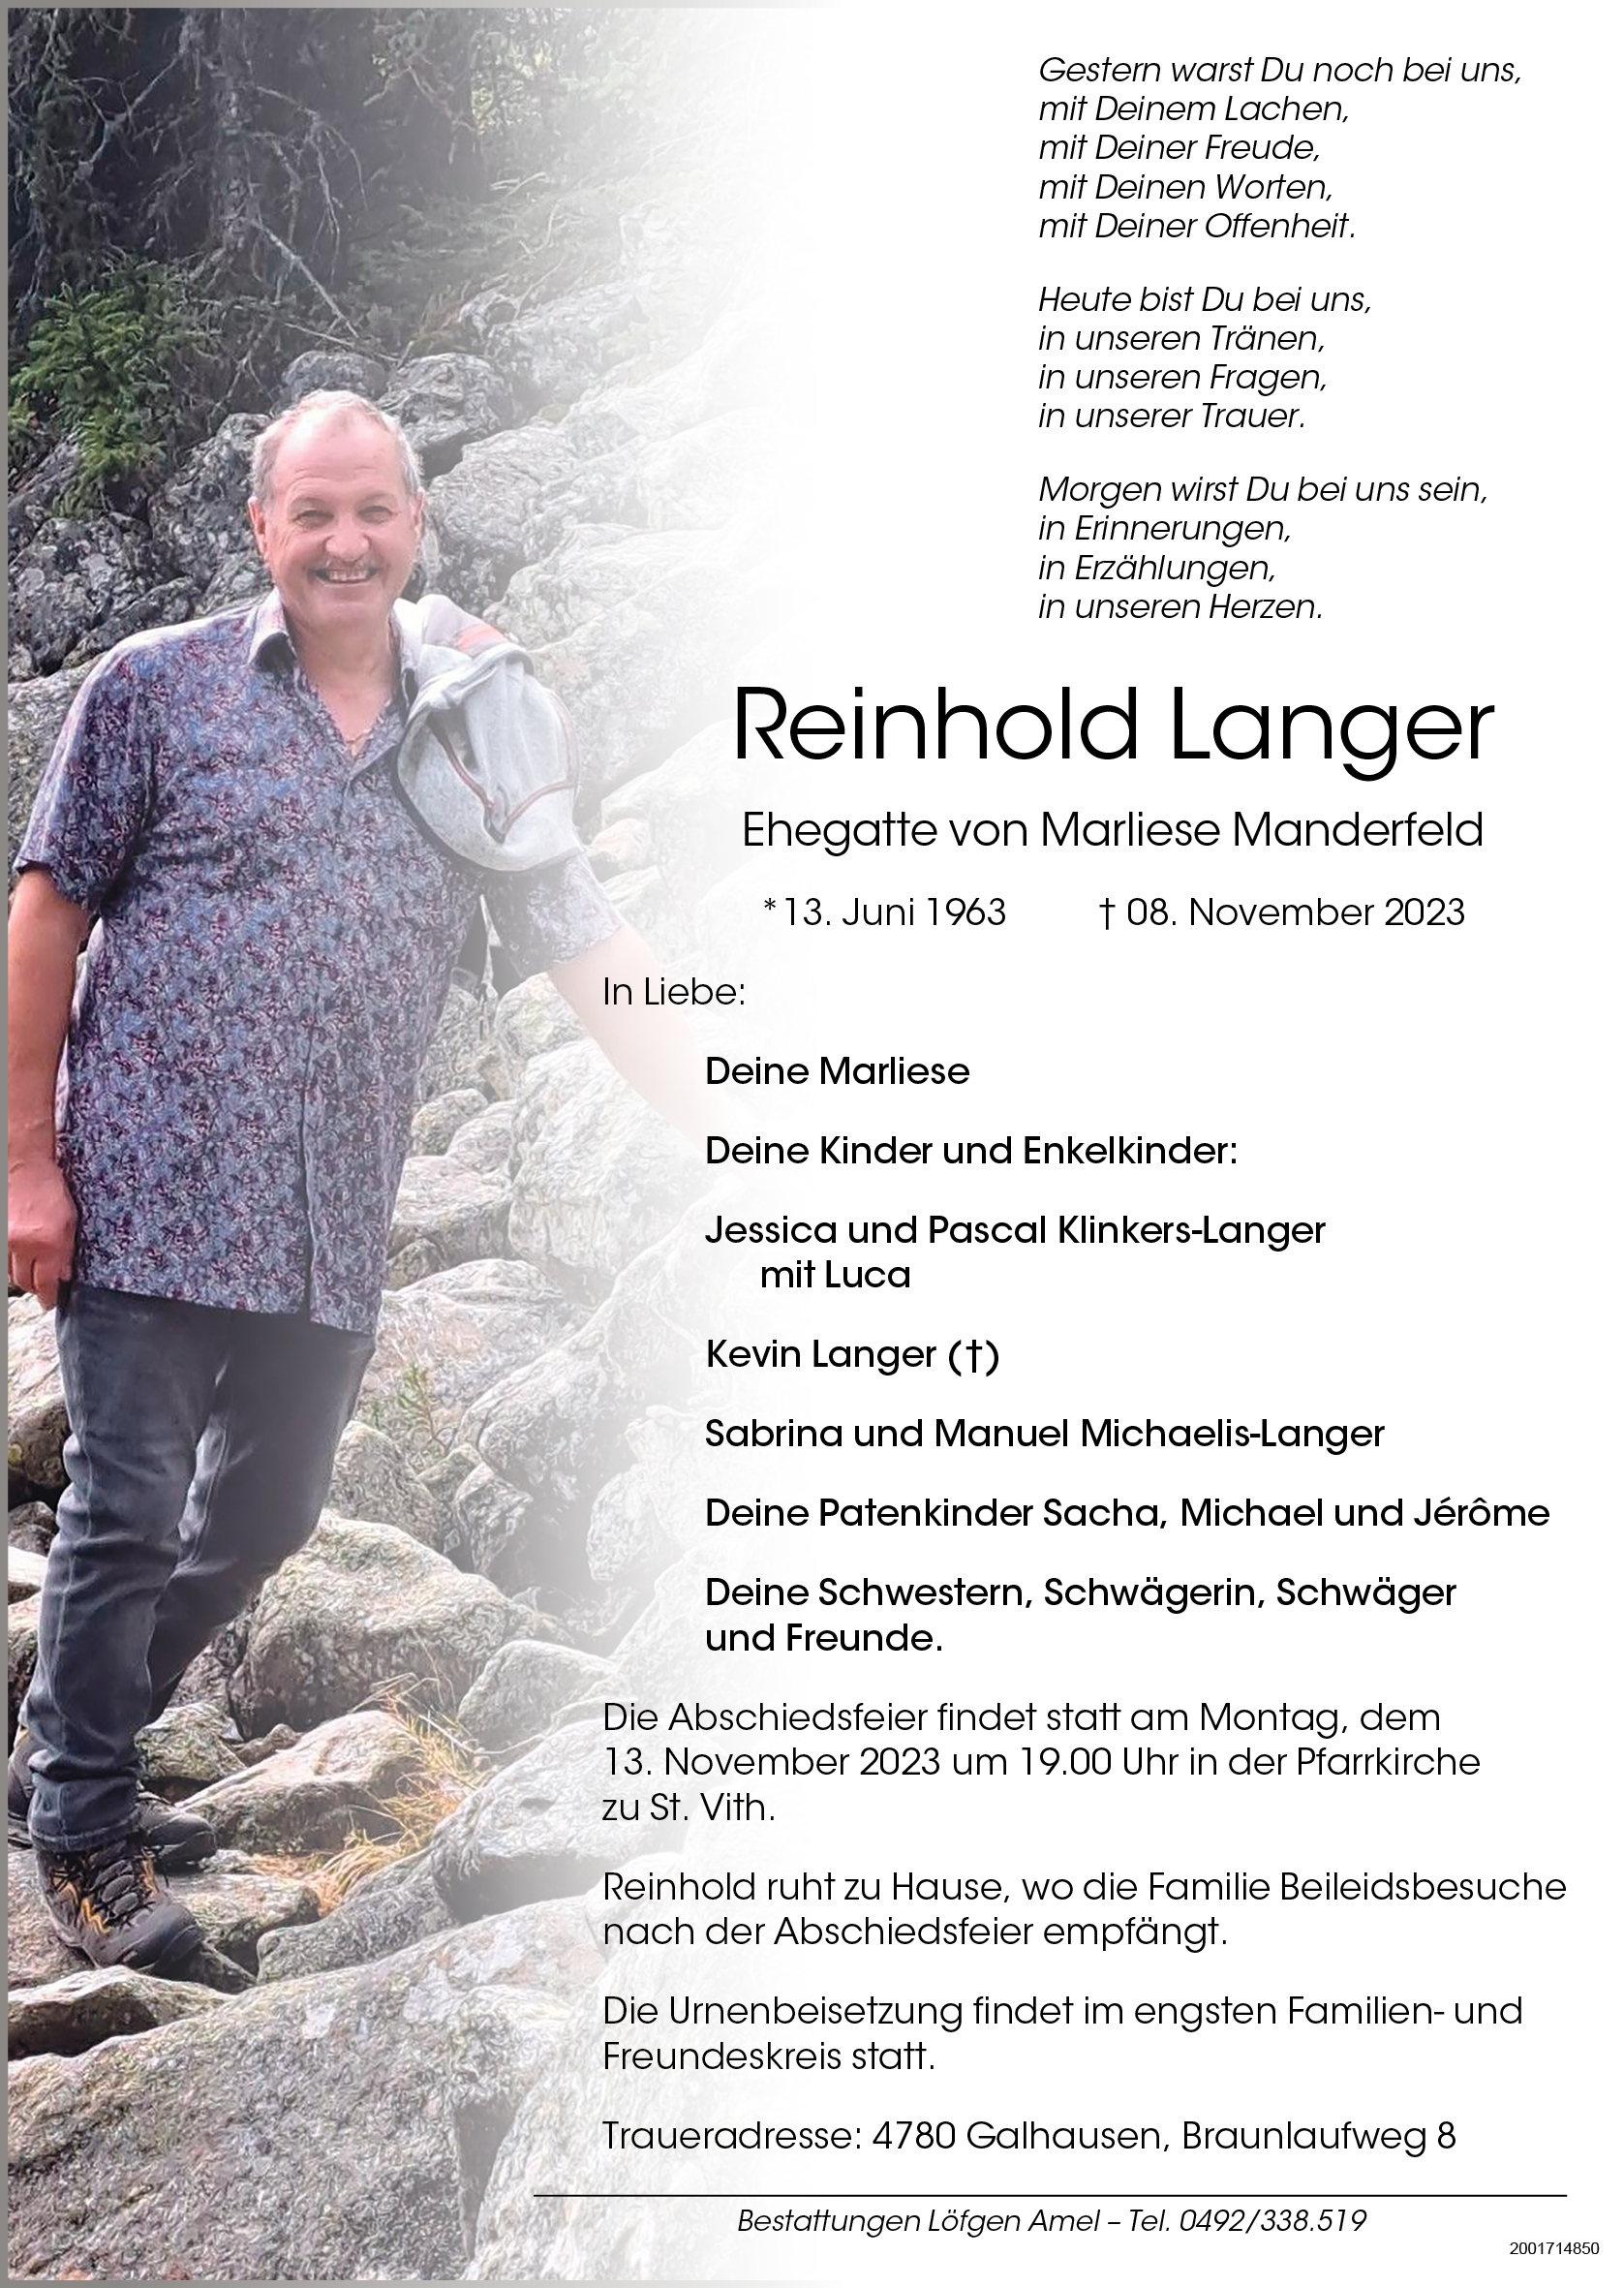 Reinhold Langer